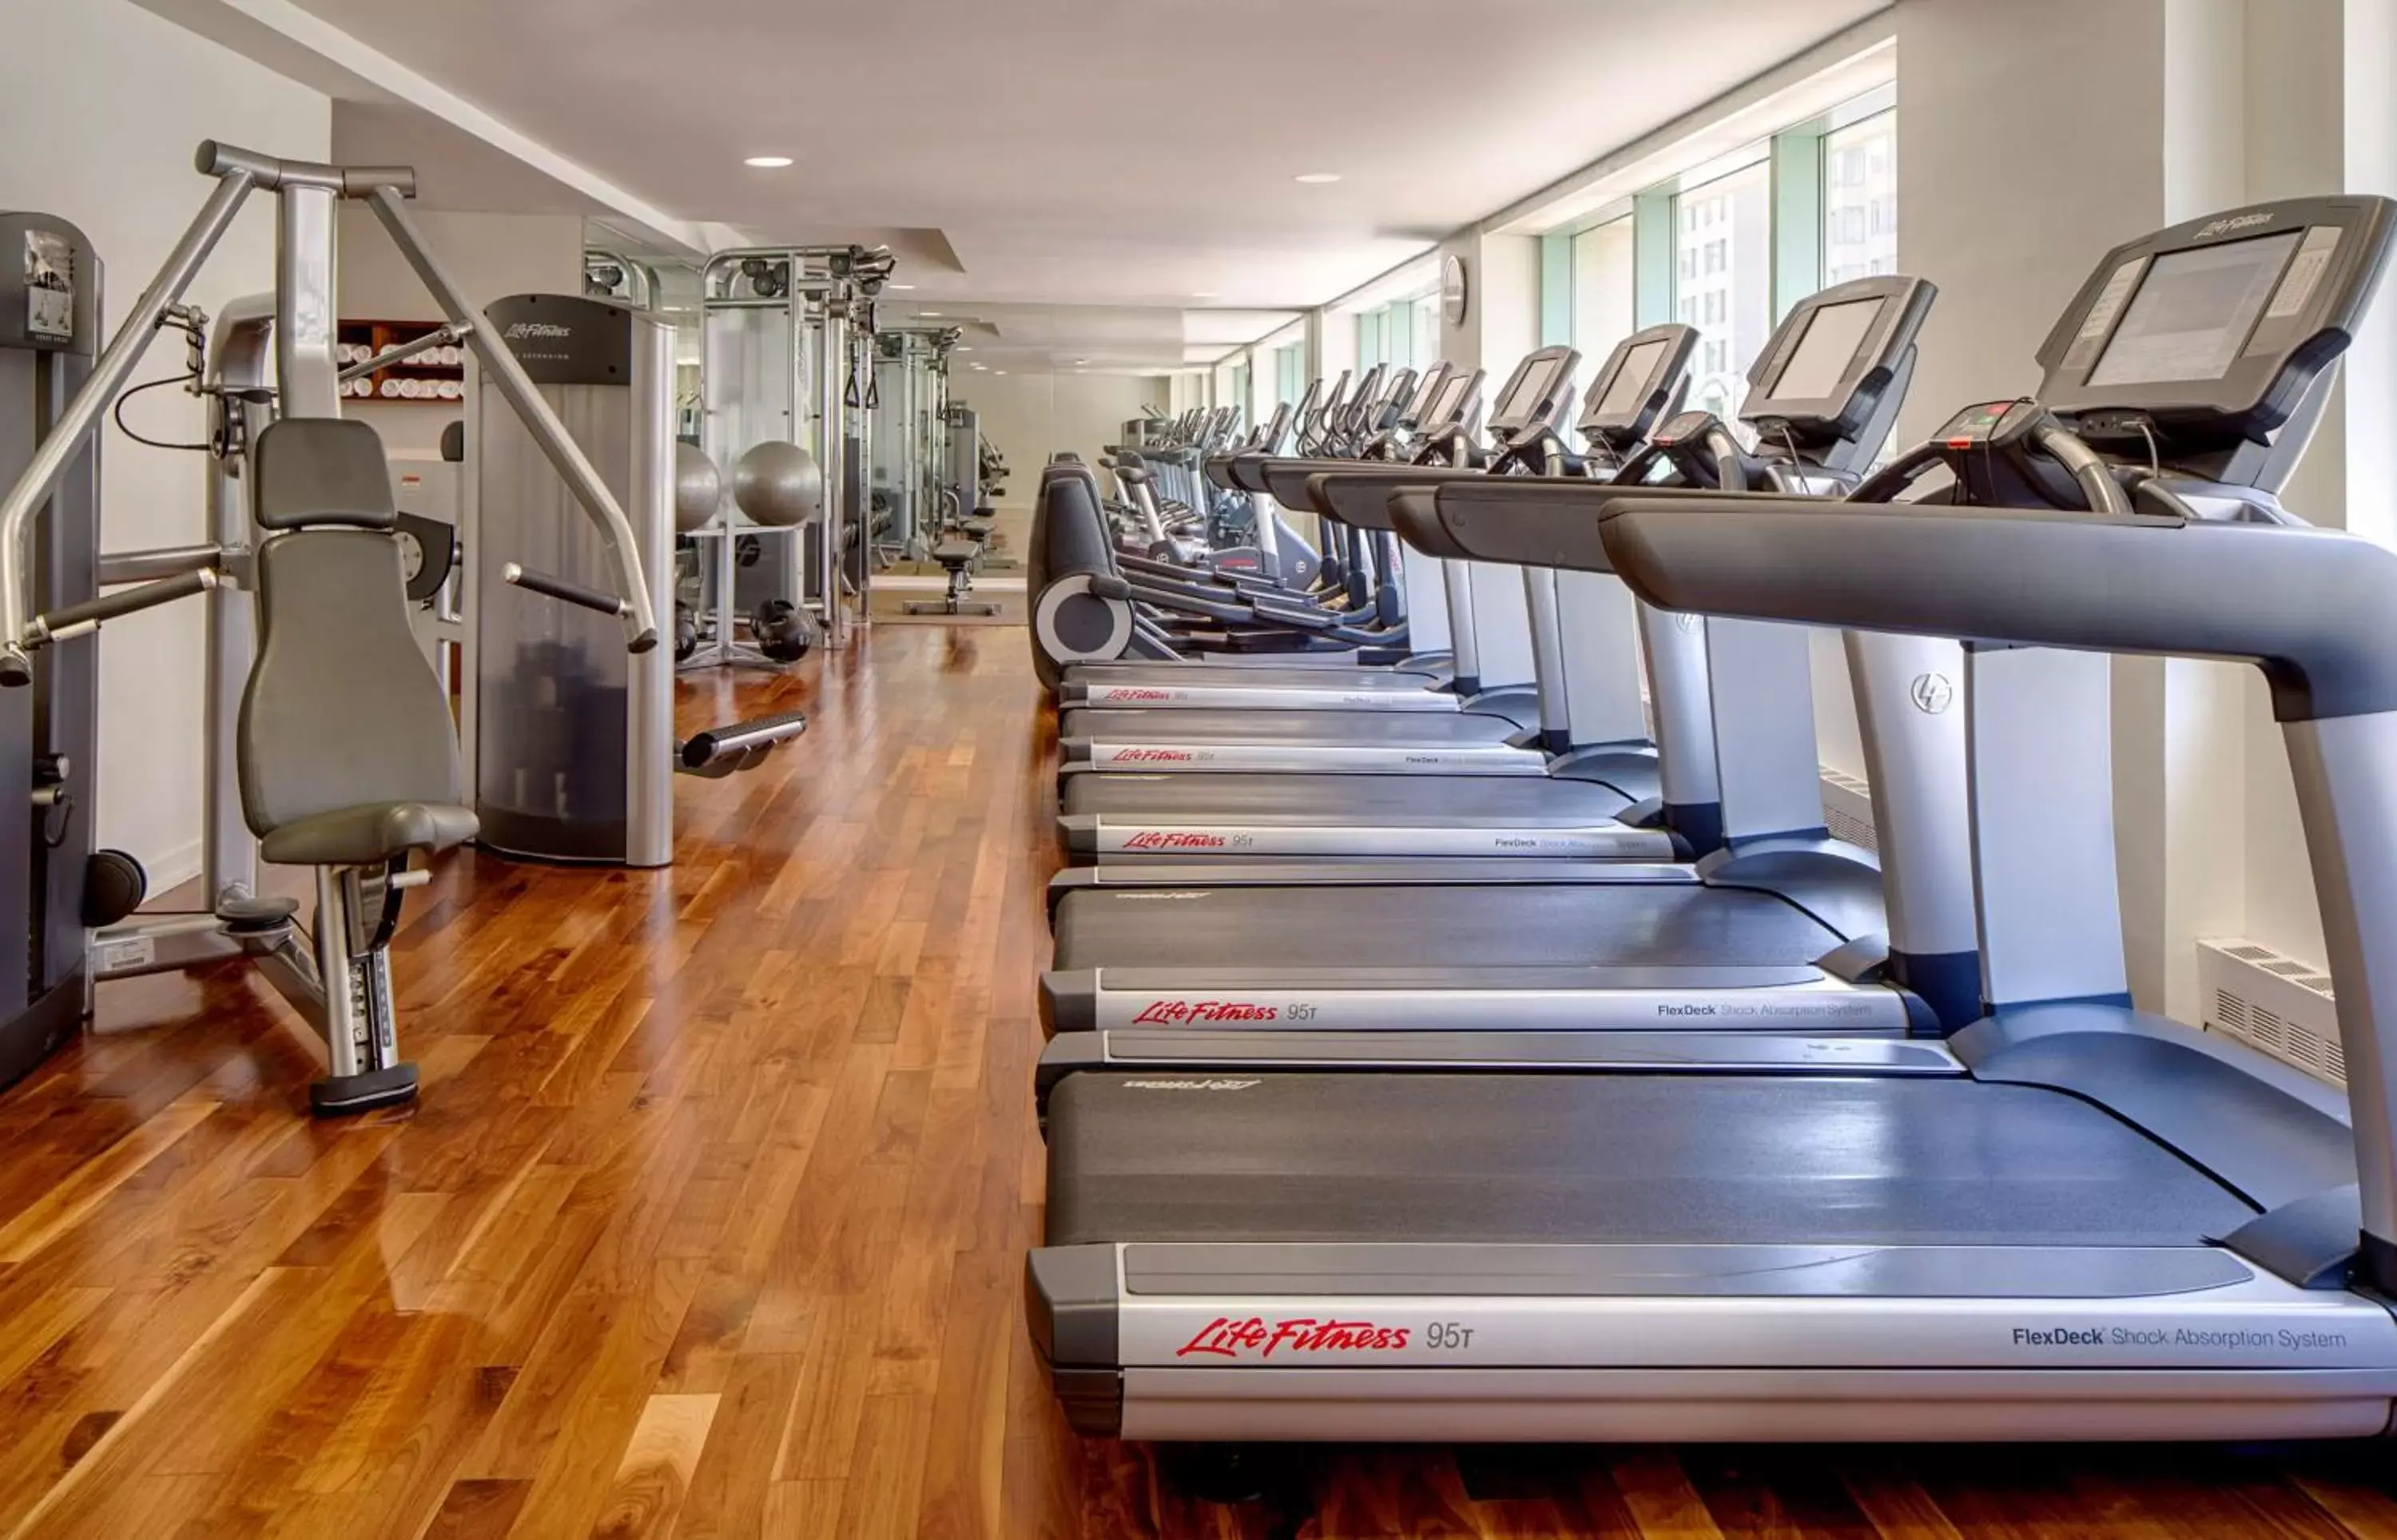 Fitness centre/facilities, Fitness Center/Facilities in Park Hyatt Washington